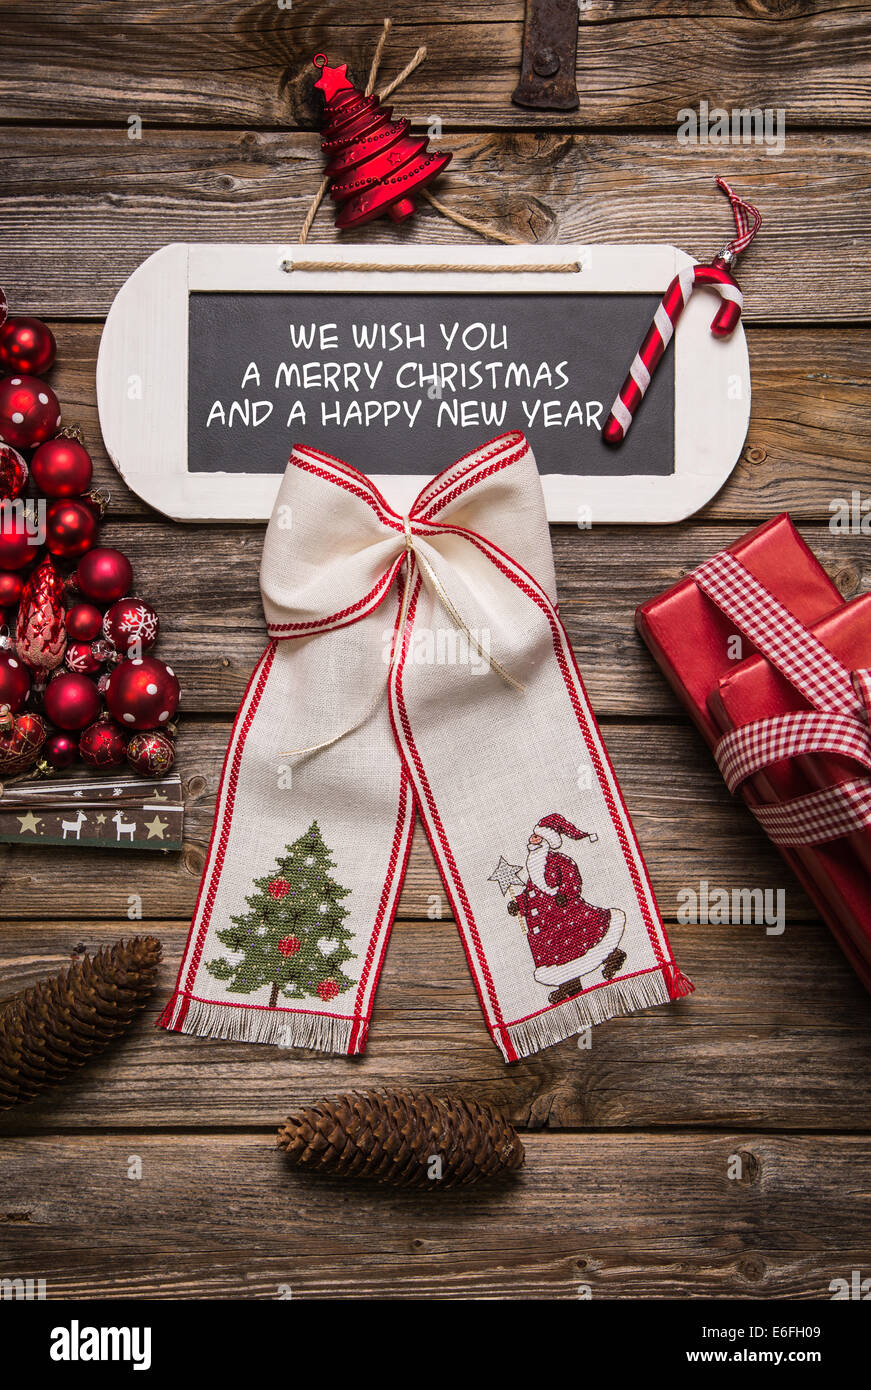 Buon Natale Country.Xmas Card Vi Auguriamo Un Buon Natale E Un Felice Anno Nuovo Rosso E Bianco Con Decorazioni Di Legno In Stile Country Foto Stock Alamy